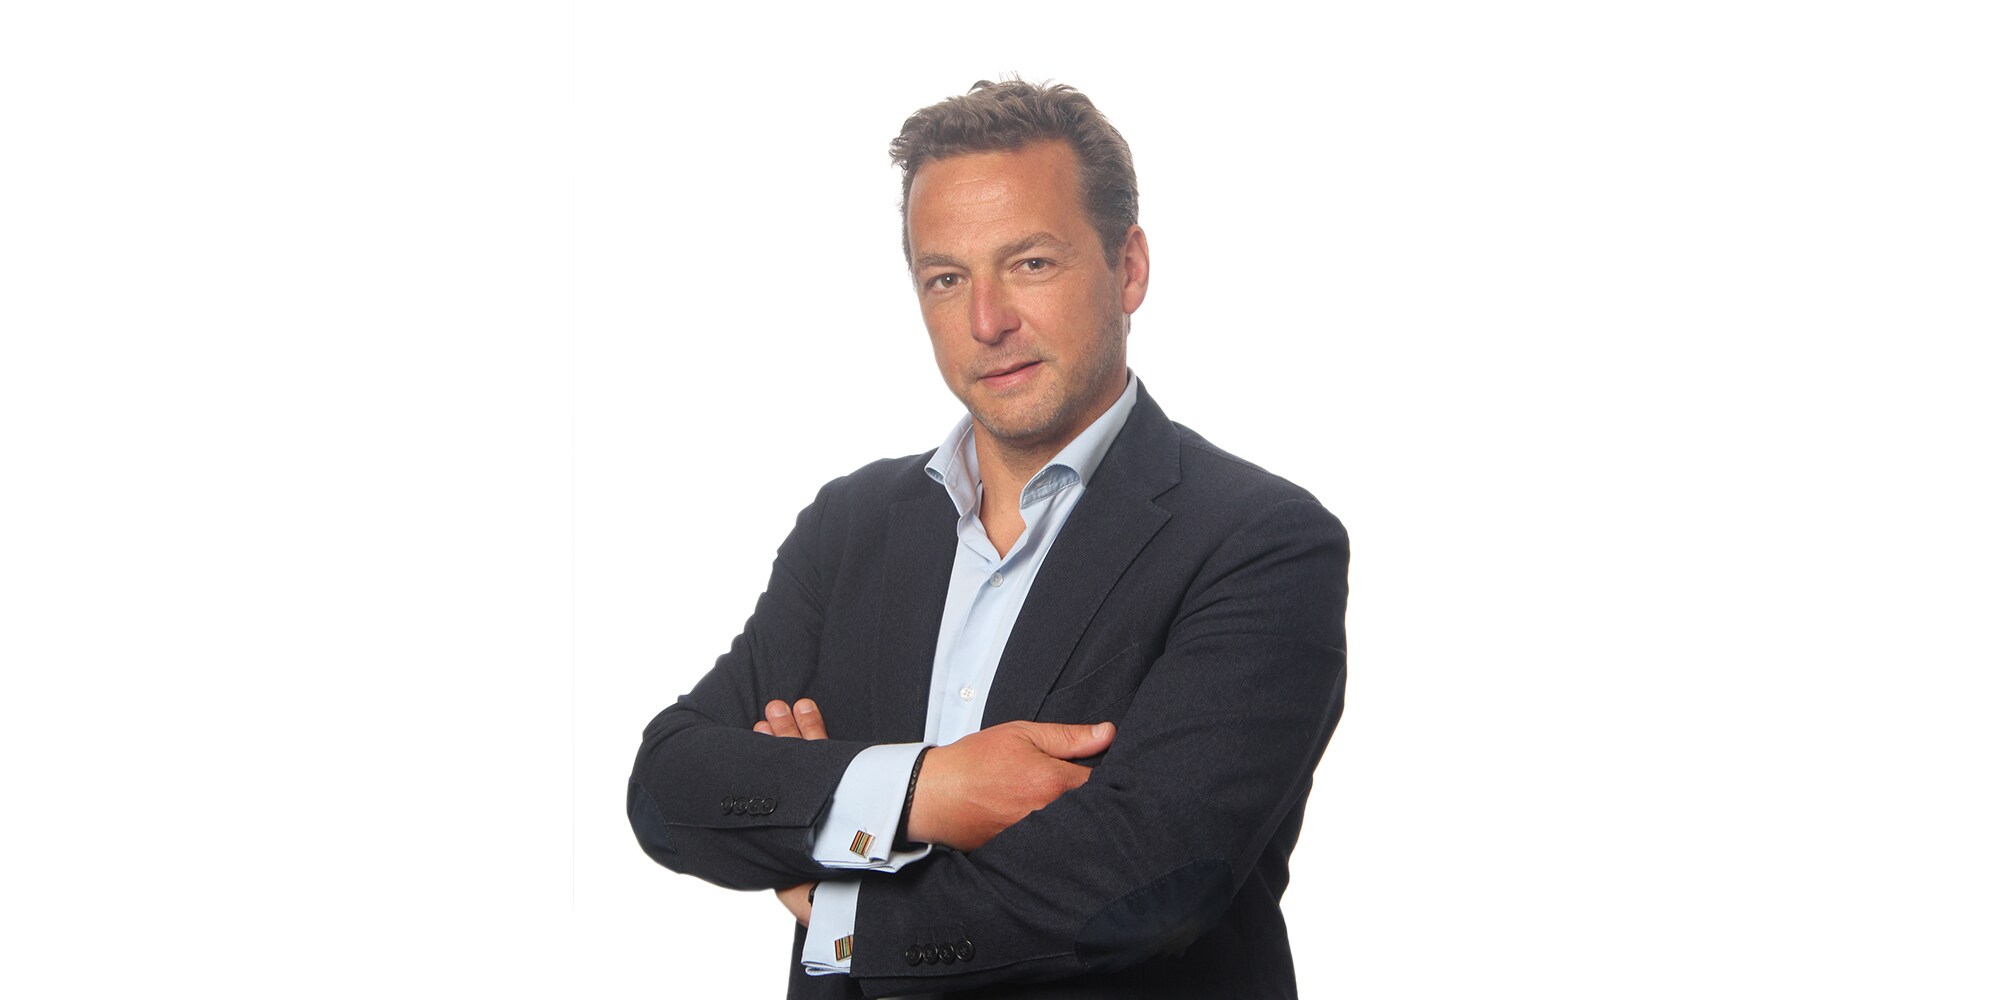 Cédric Deleuze, Marketing Leader, Belgium